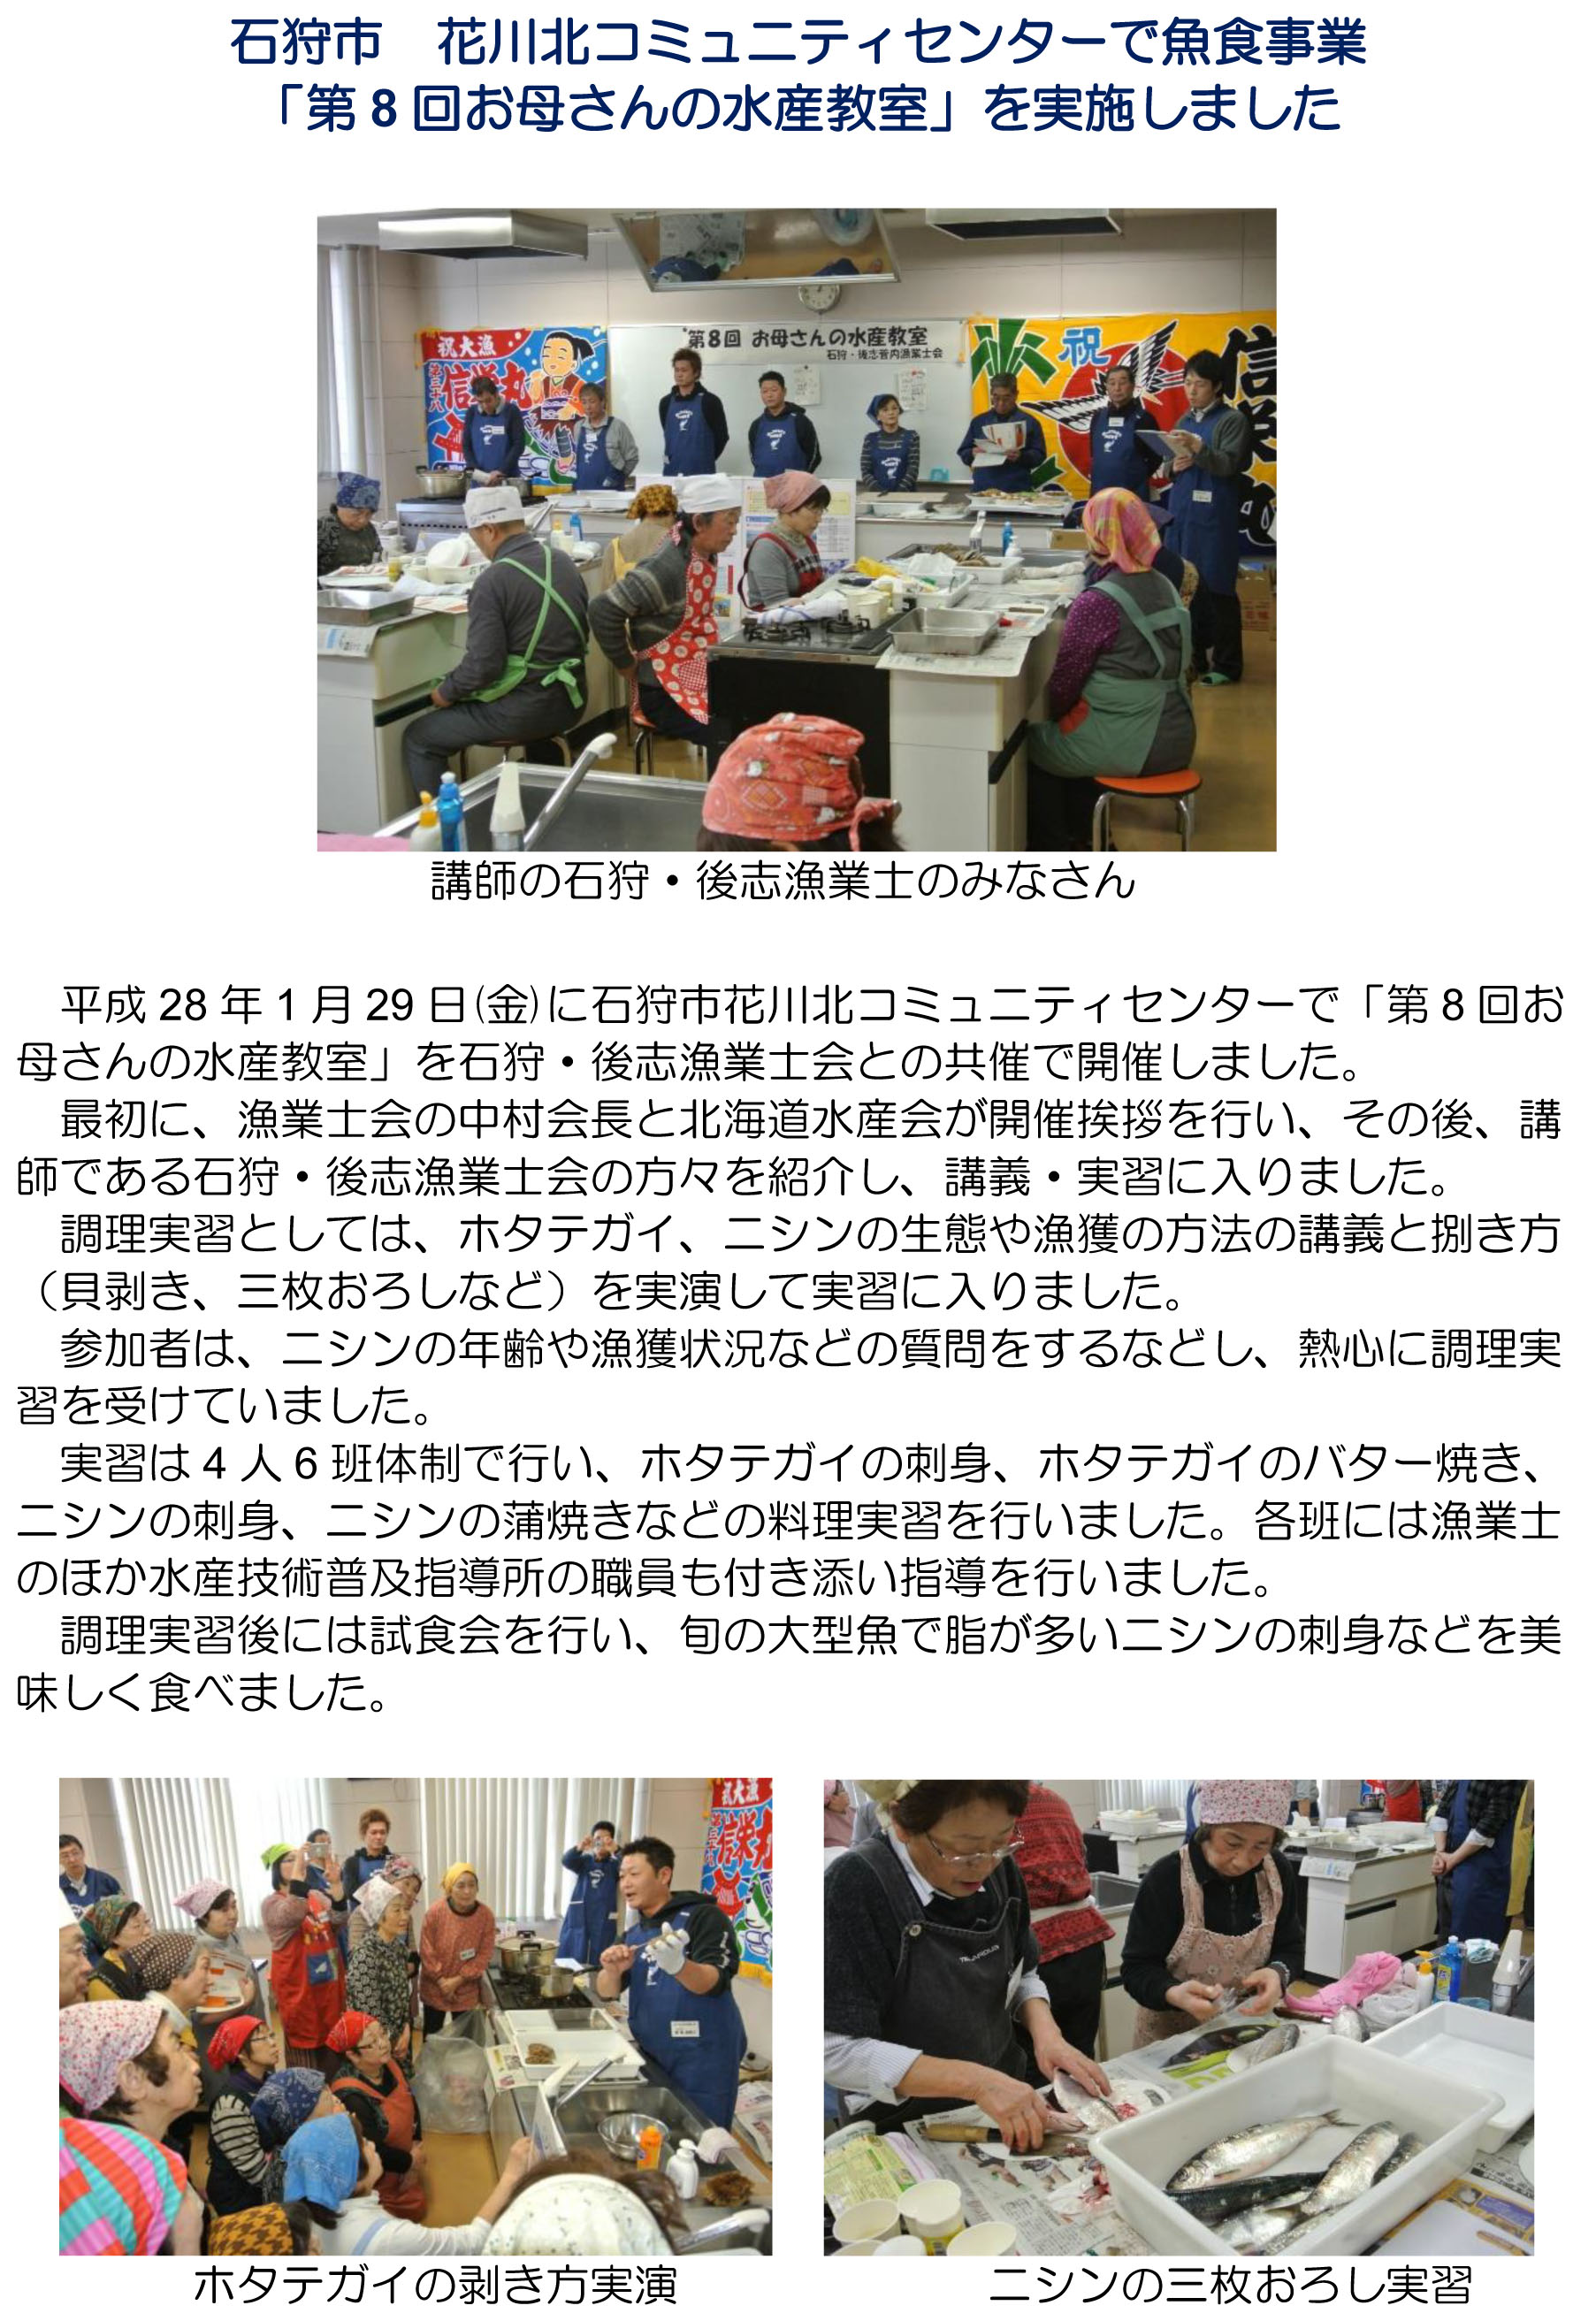 石狩市花川北コミュニティセンターで魚食事業「第8階お母さんの水産教室」を実施しました